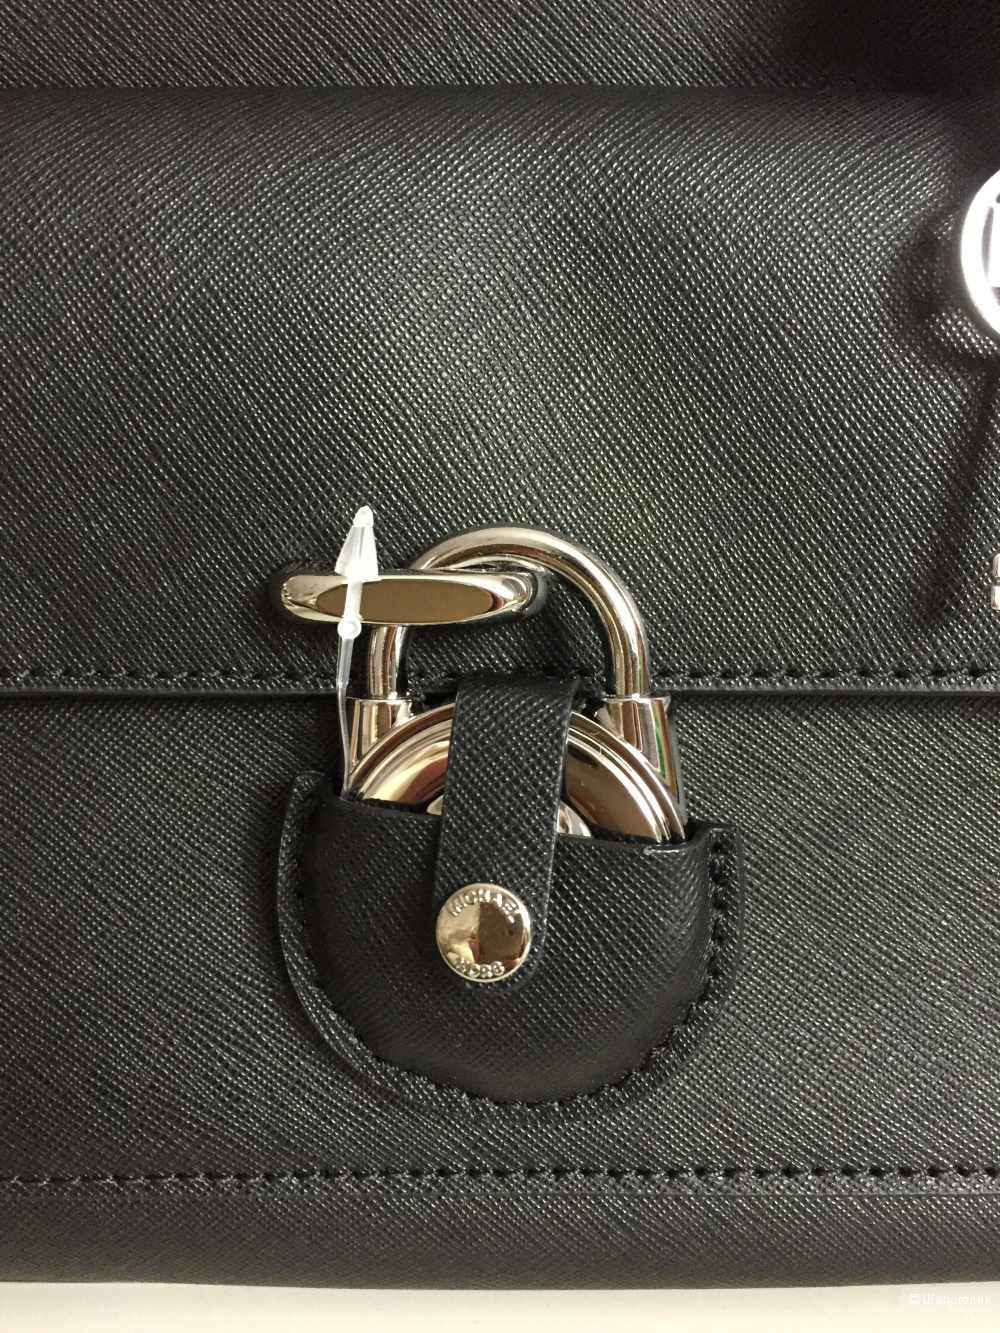 Новая сумка Michael Kors Emma Medium Saffiano leather